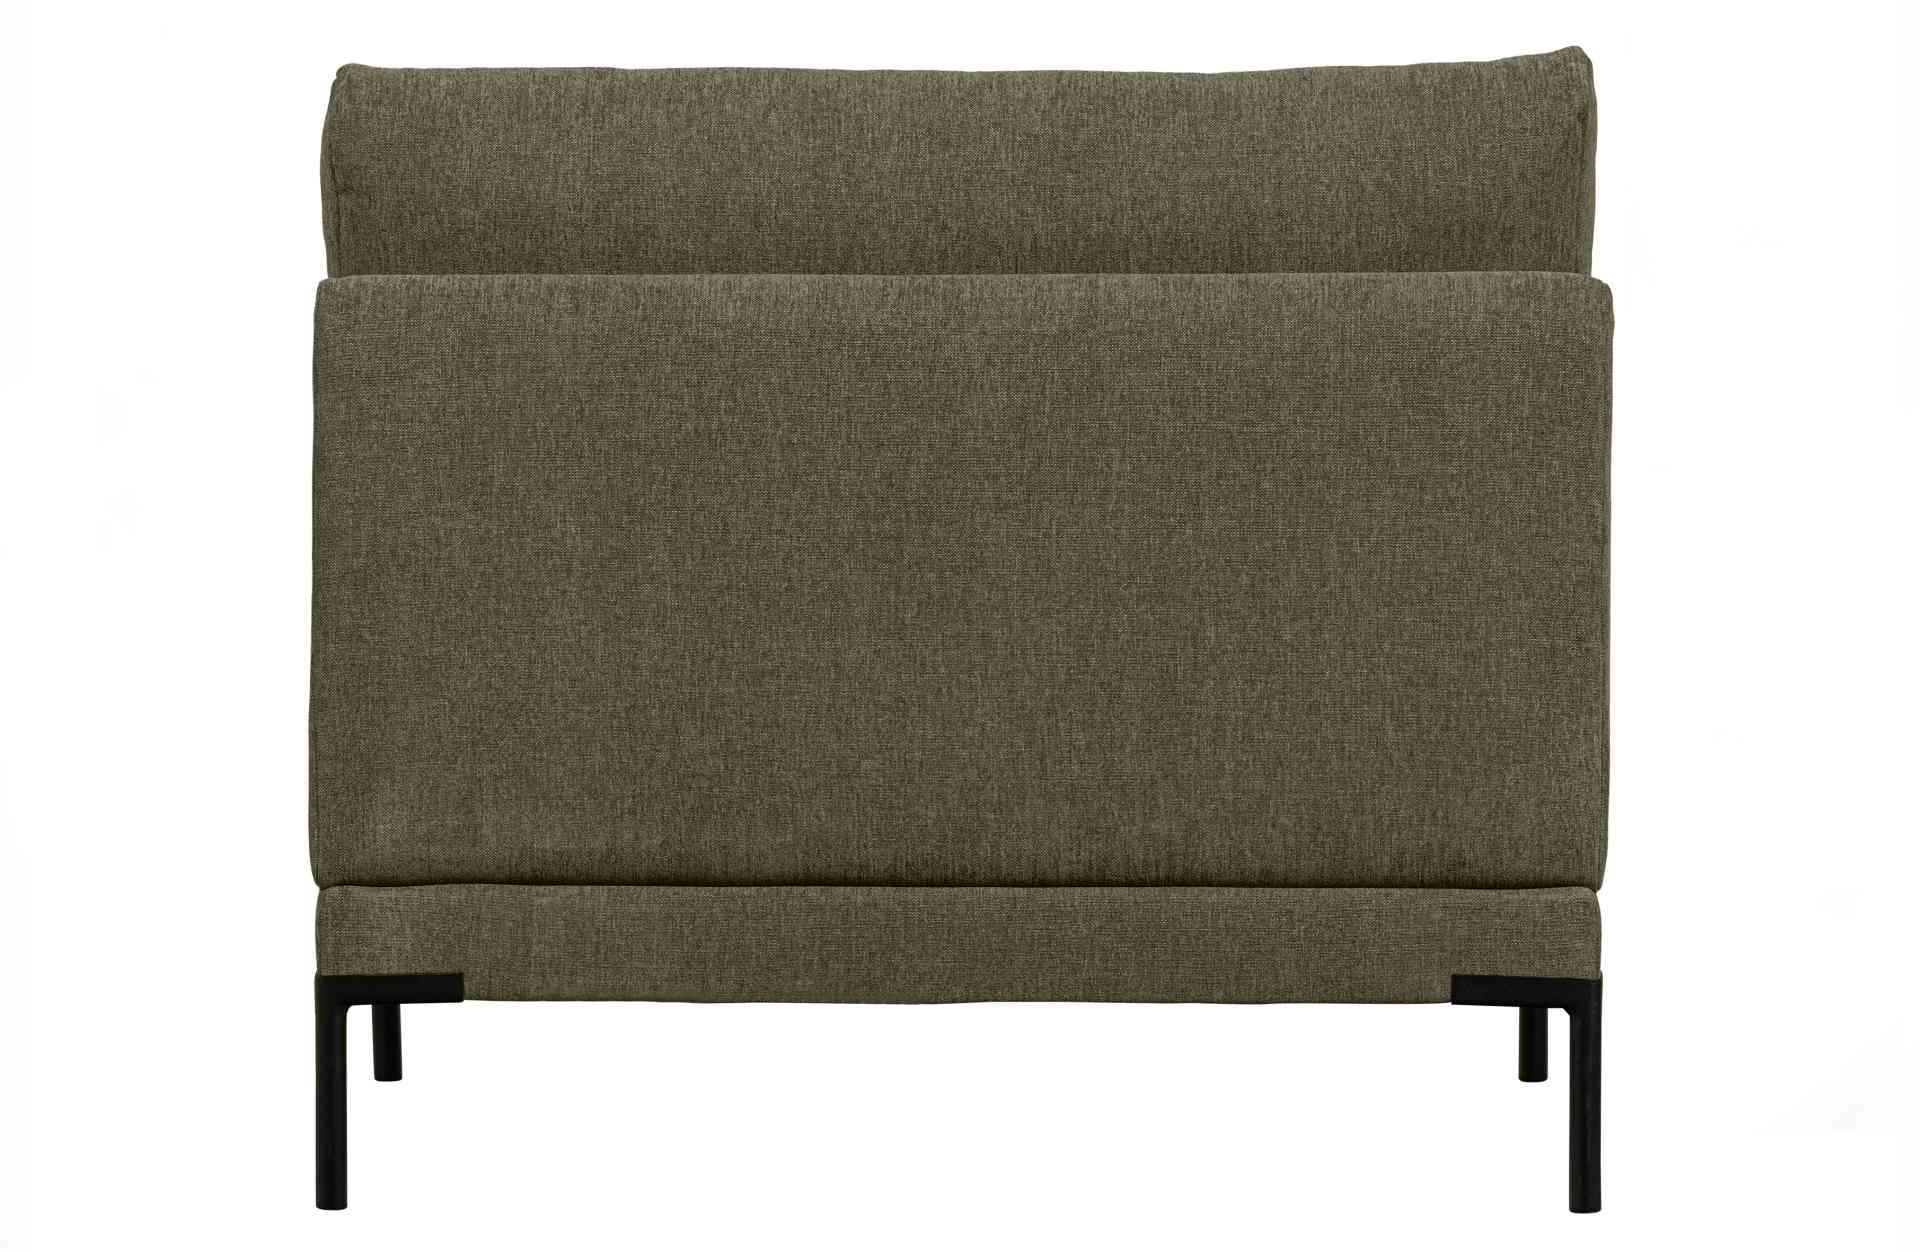 Das Modulsofa Couple Lounge überzeugt mit seinem modernen Design. Das Loveseat Element wurde aus Melange Stoff gefertigt, welcher einen einen grünen Farbton besitzen. Das Gestell ist aus Metall und hat eine schwarze Farbe. Das Element hat eine Länge von 1